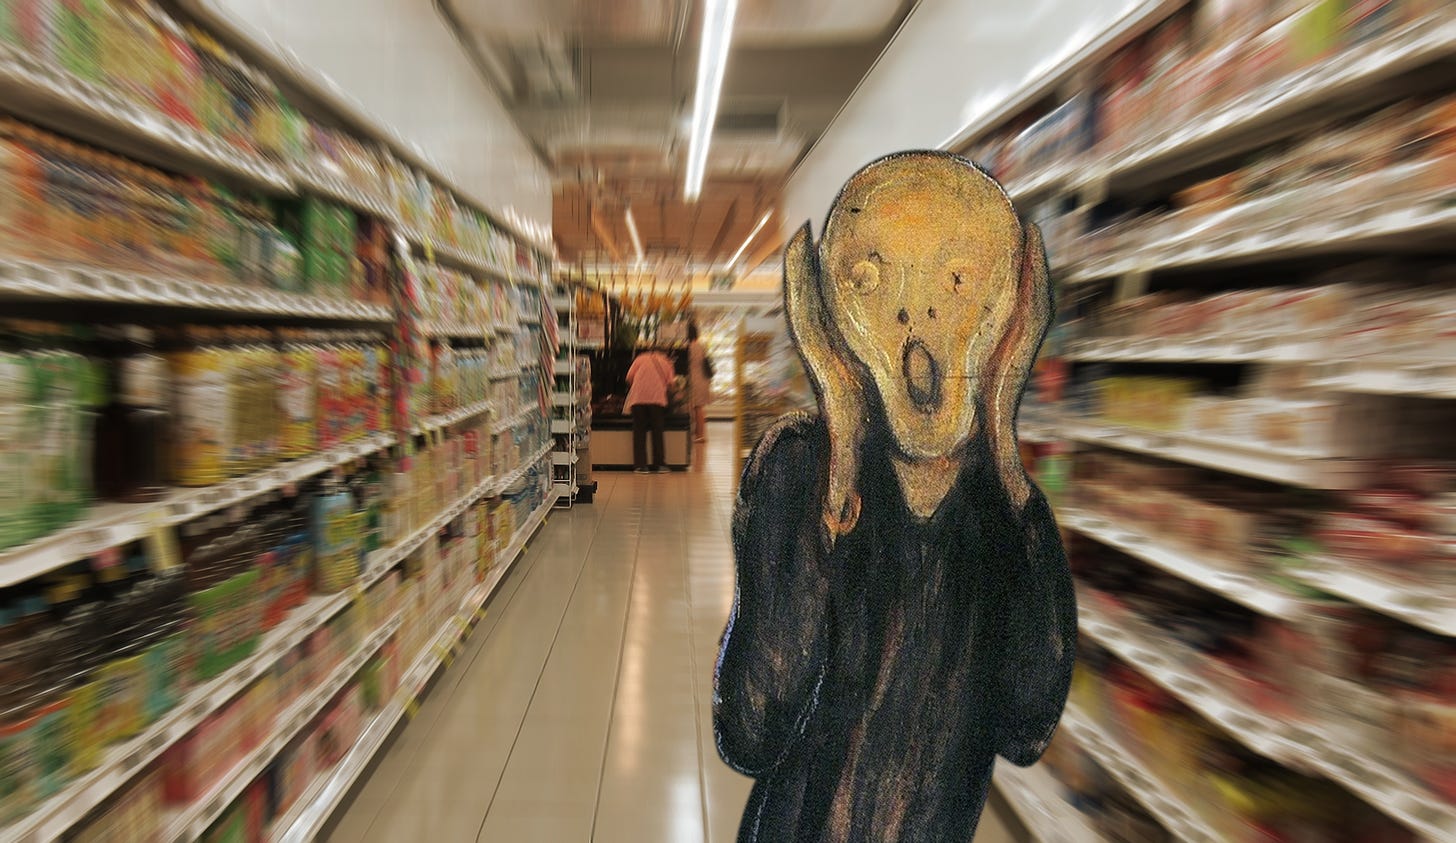 O simpático personagem do quadro O Grito, de Edvard Munch, vai ao supermercado